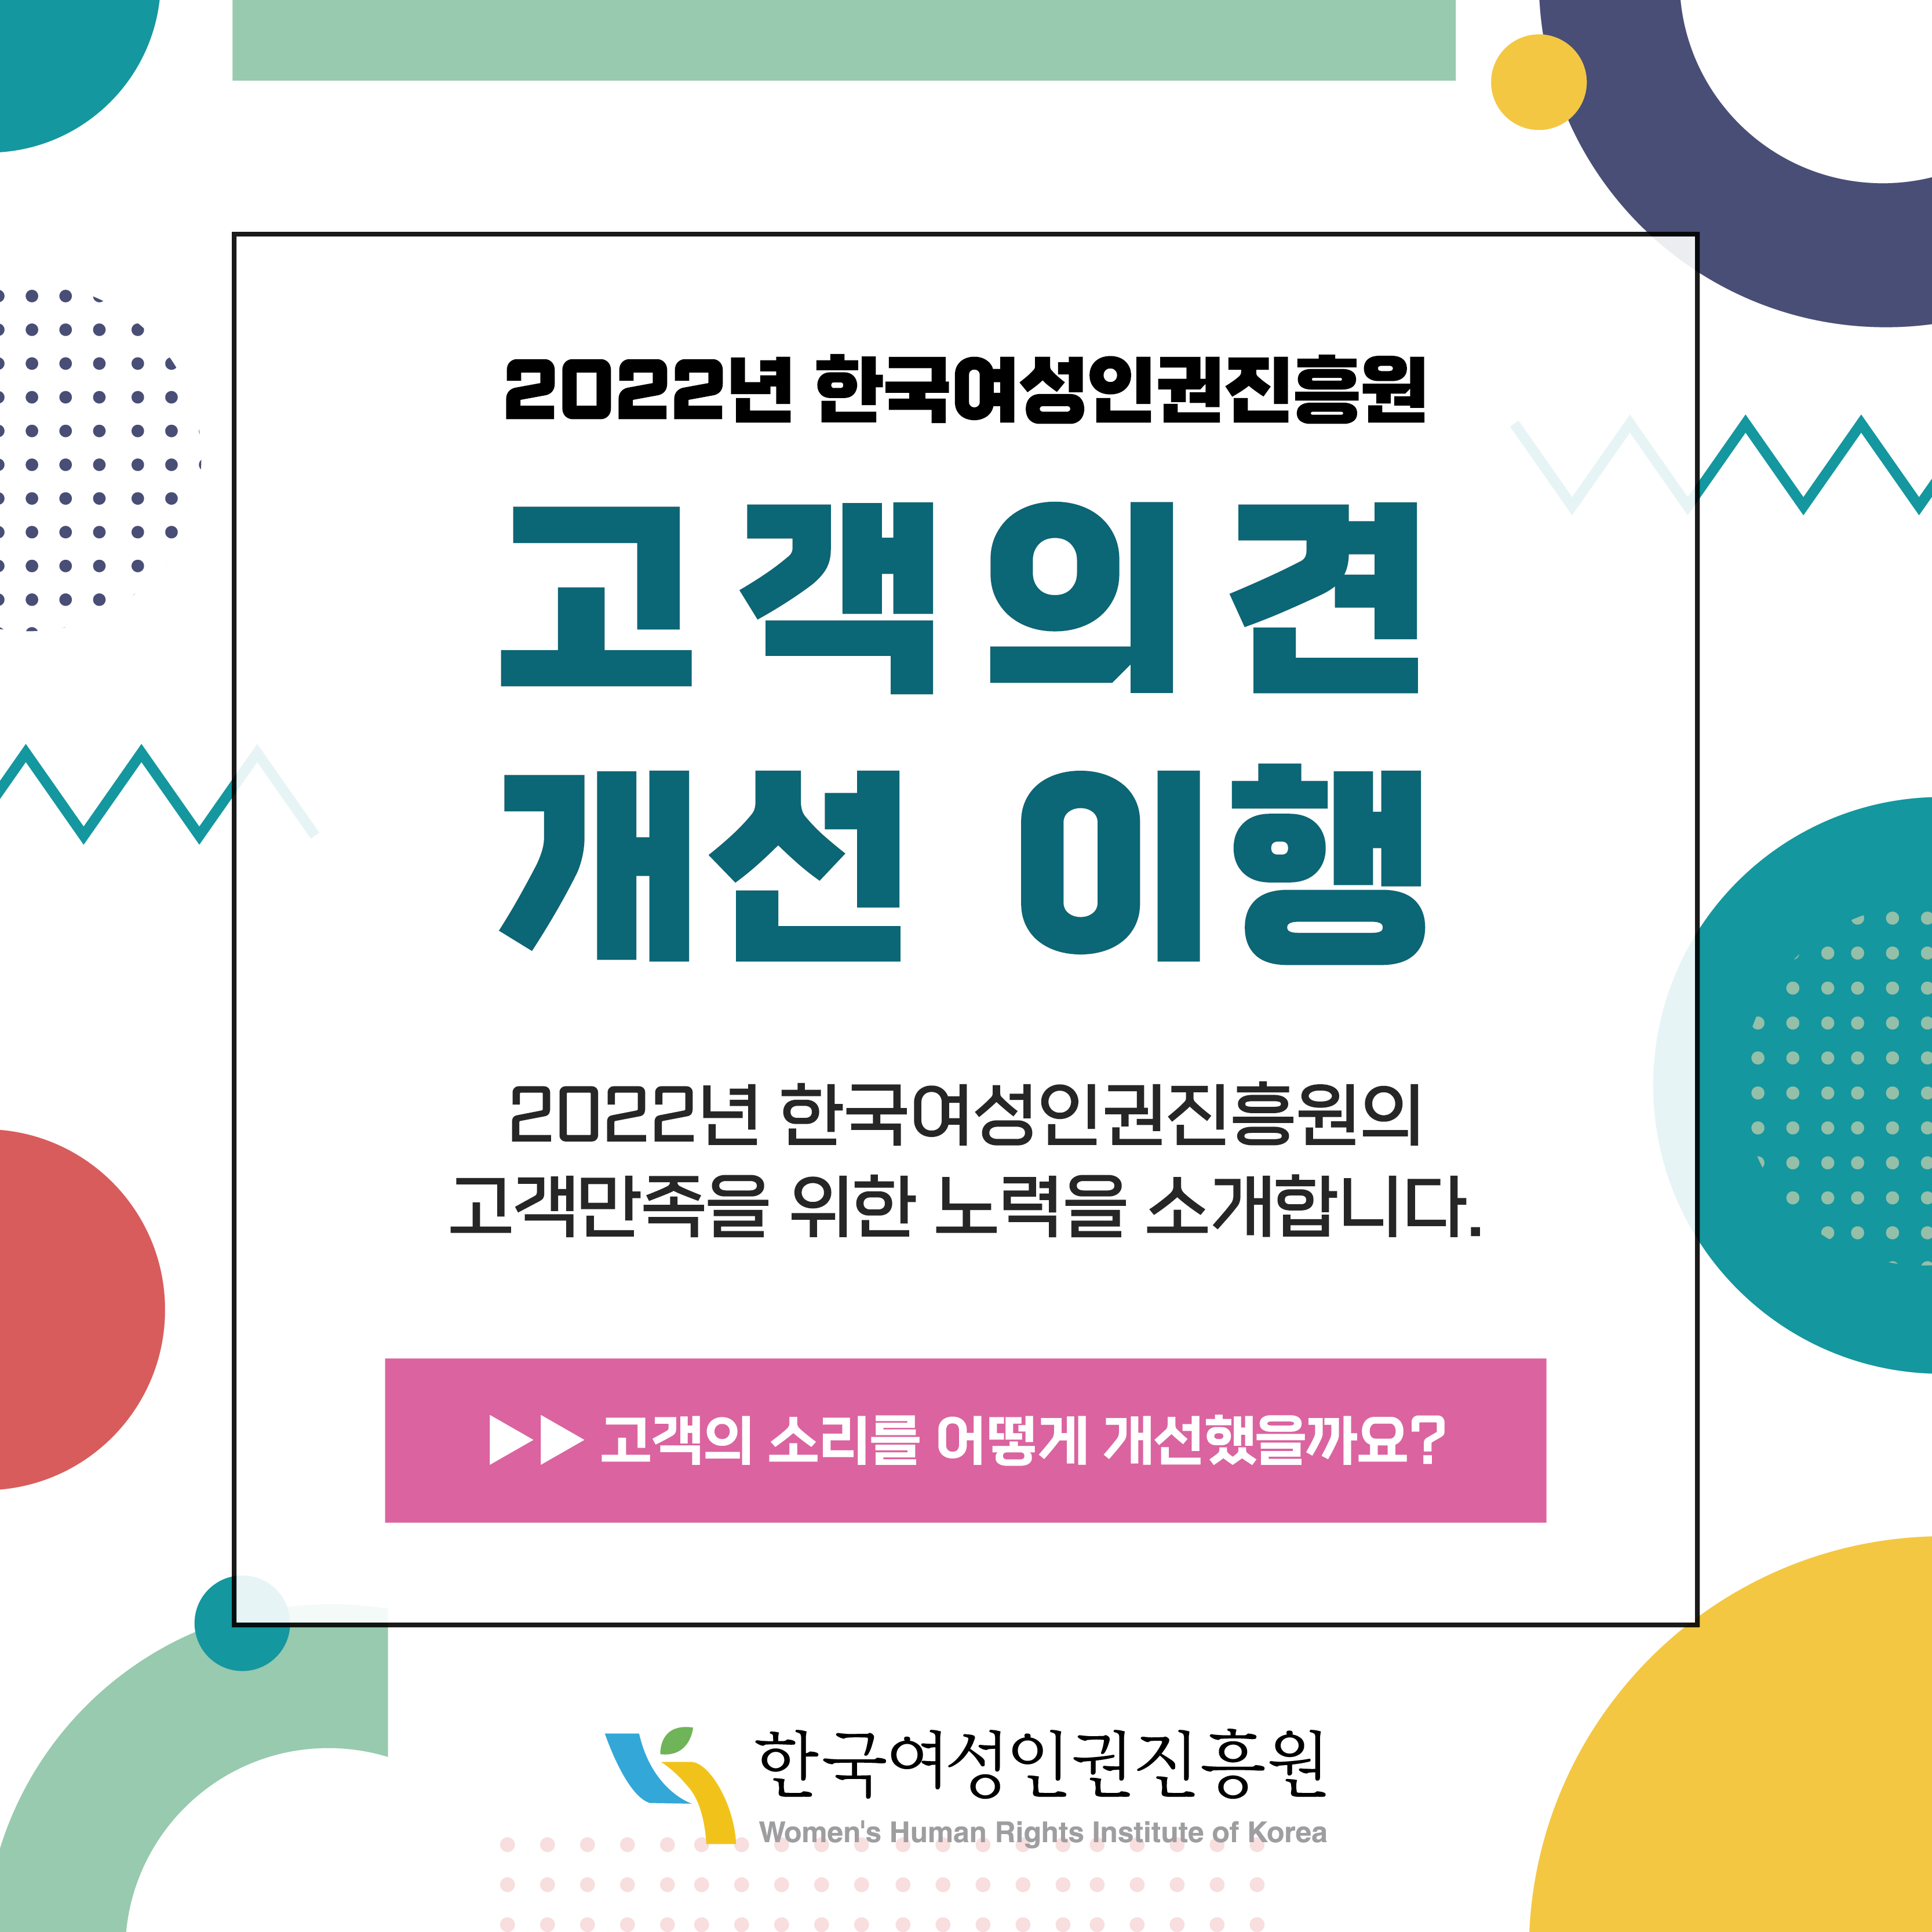 2022년 한국여성인권진흥원 고객의견 개선 이행 2022년 한국여성인권진흥원의 고객만족을 위한 노력을 소개합니다. >> 고객의 소리를 어떻게 개선했을까요?